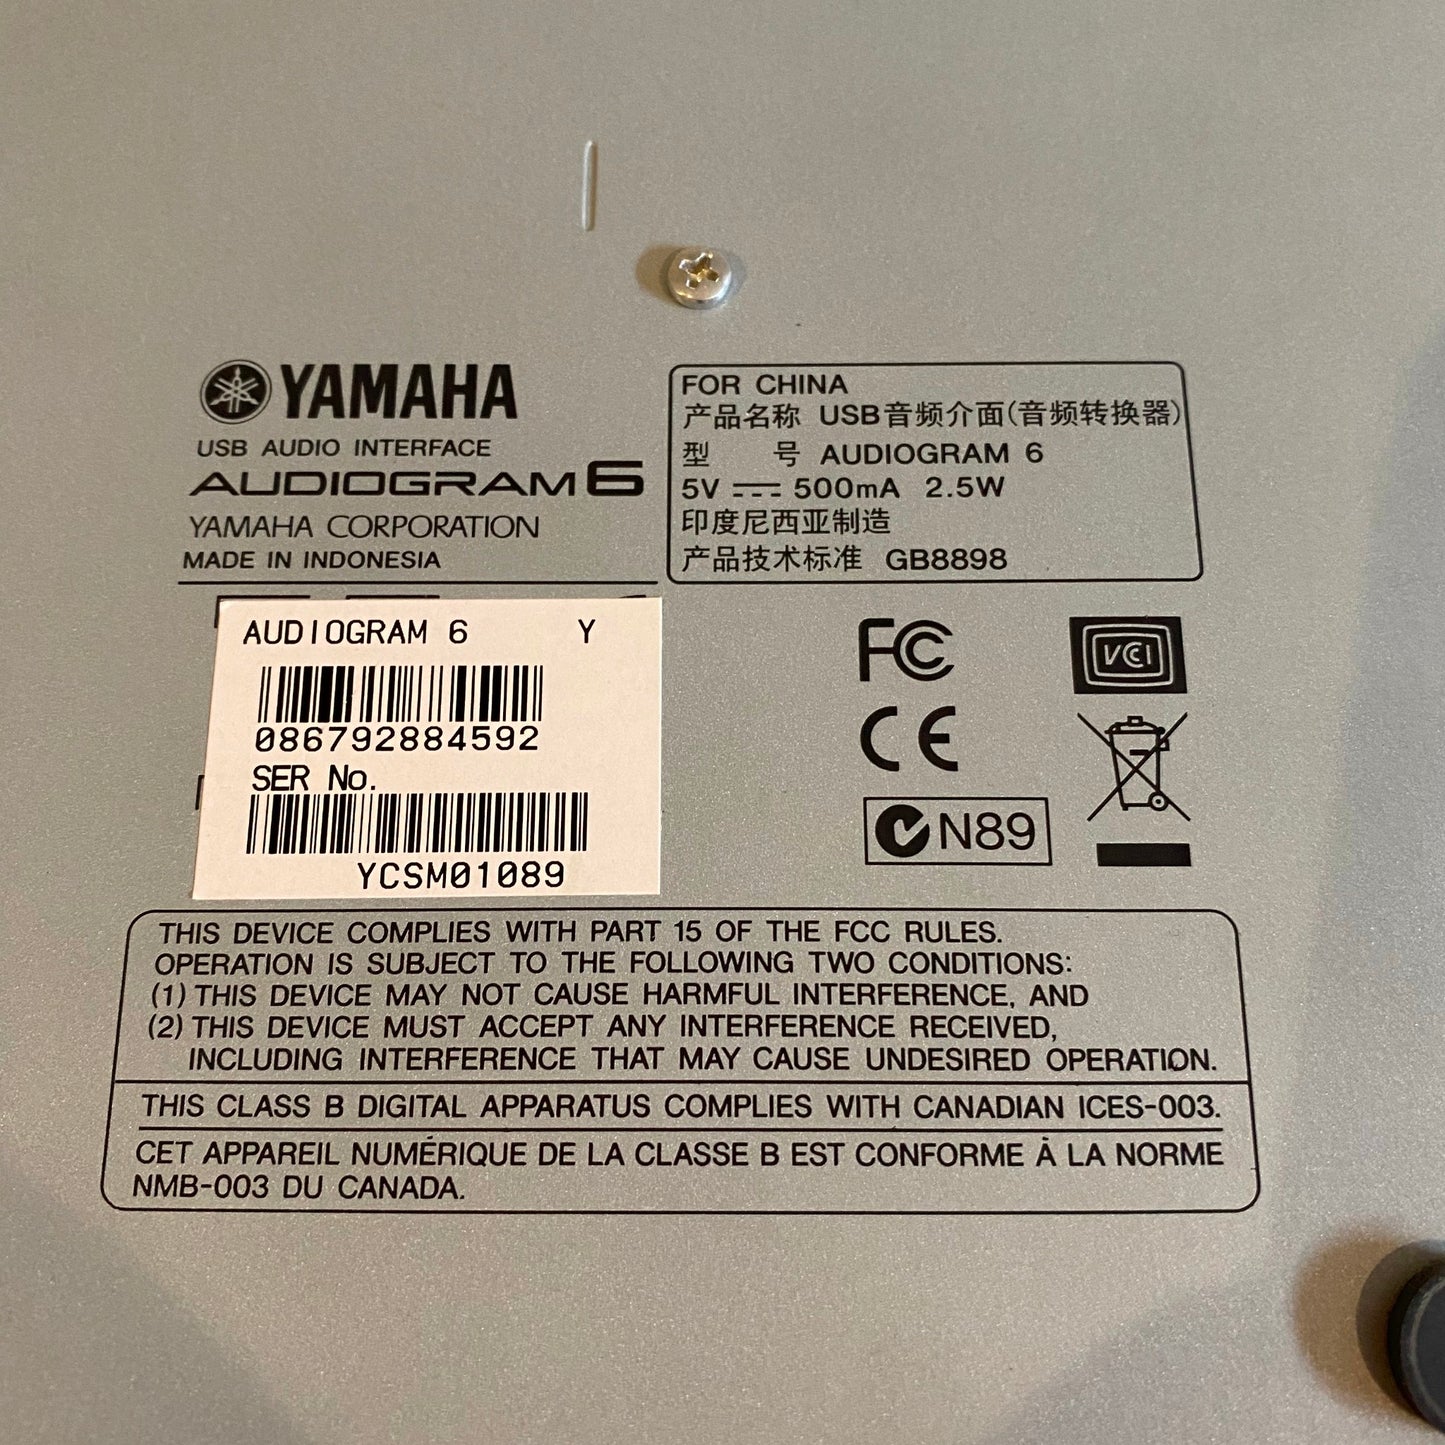 Yamaha Audiogram6 USB Audio Interface Mixer